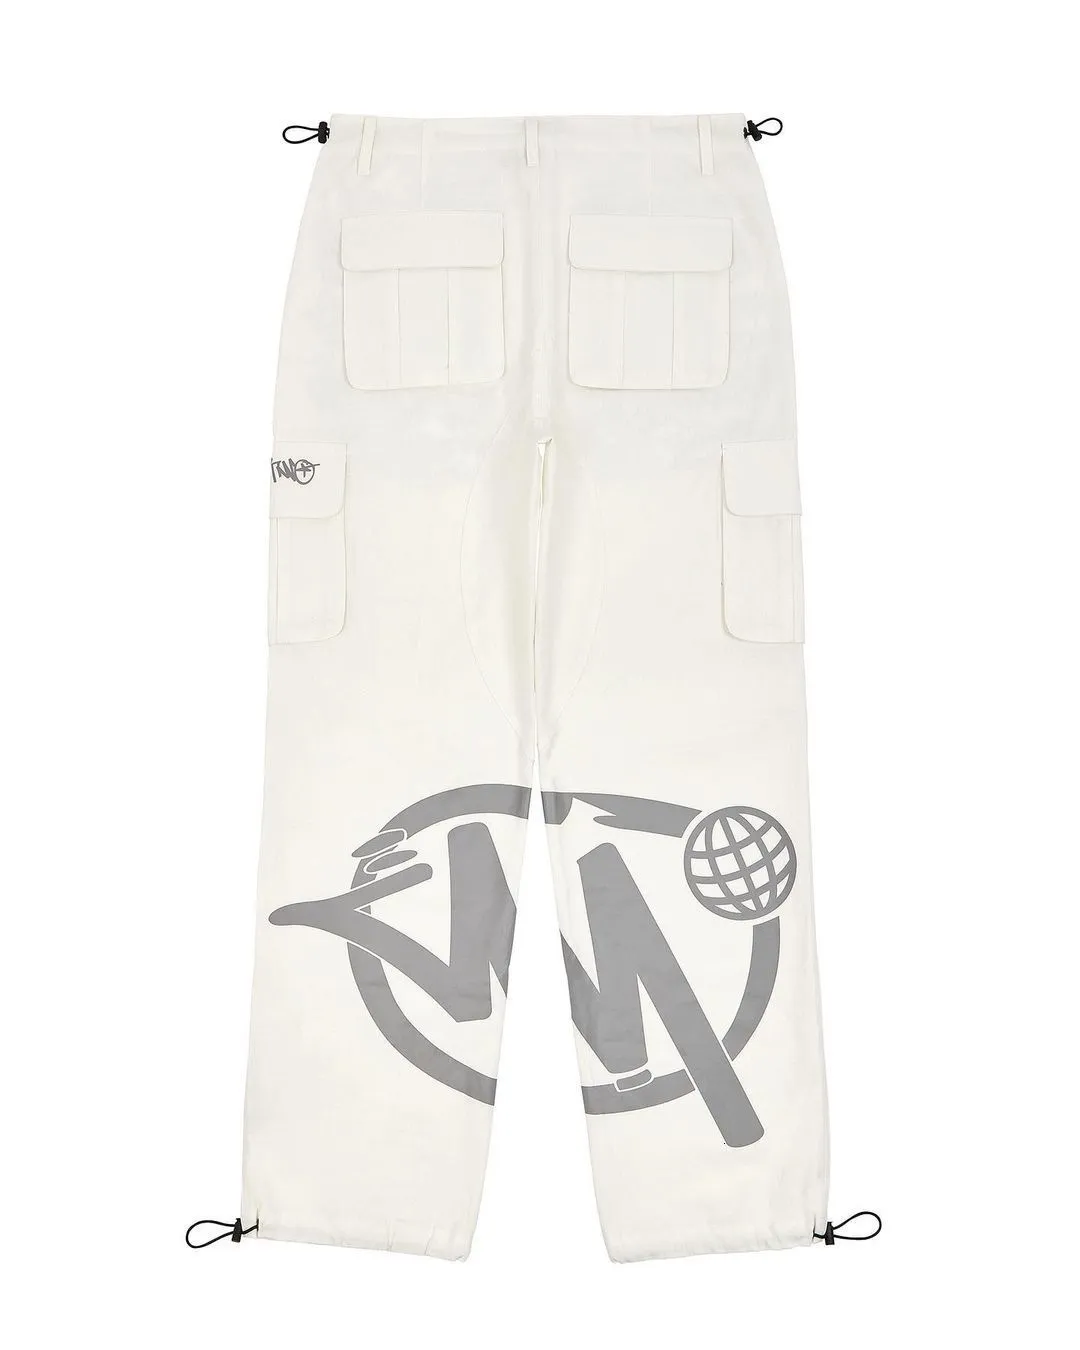 Grey Cargo Pants Outfit Idea | Moda de ropa, Ropa, Ropa de moda